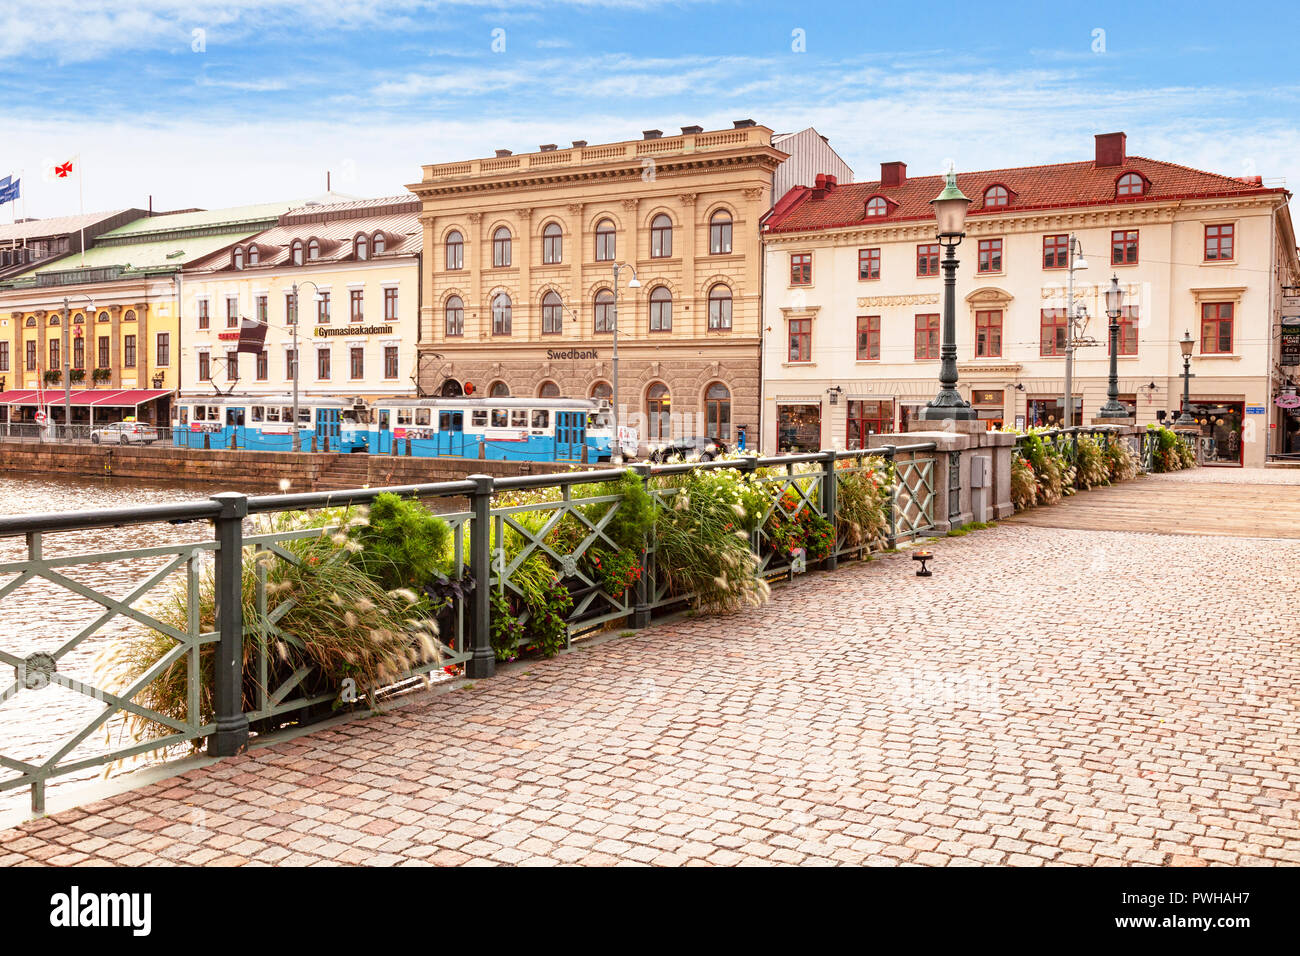 14 Settembre 2018: Gothenburg, Svezia - edifici tradizionali e un tram accanto alla Stora Hamn Canal, dal Tyska Bron o ponte tedesco. Foto Stock